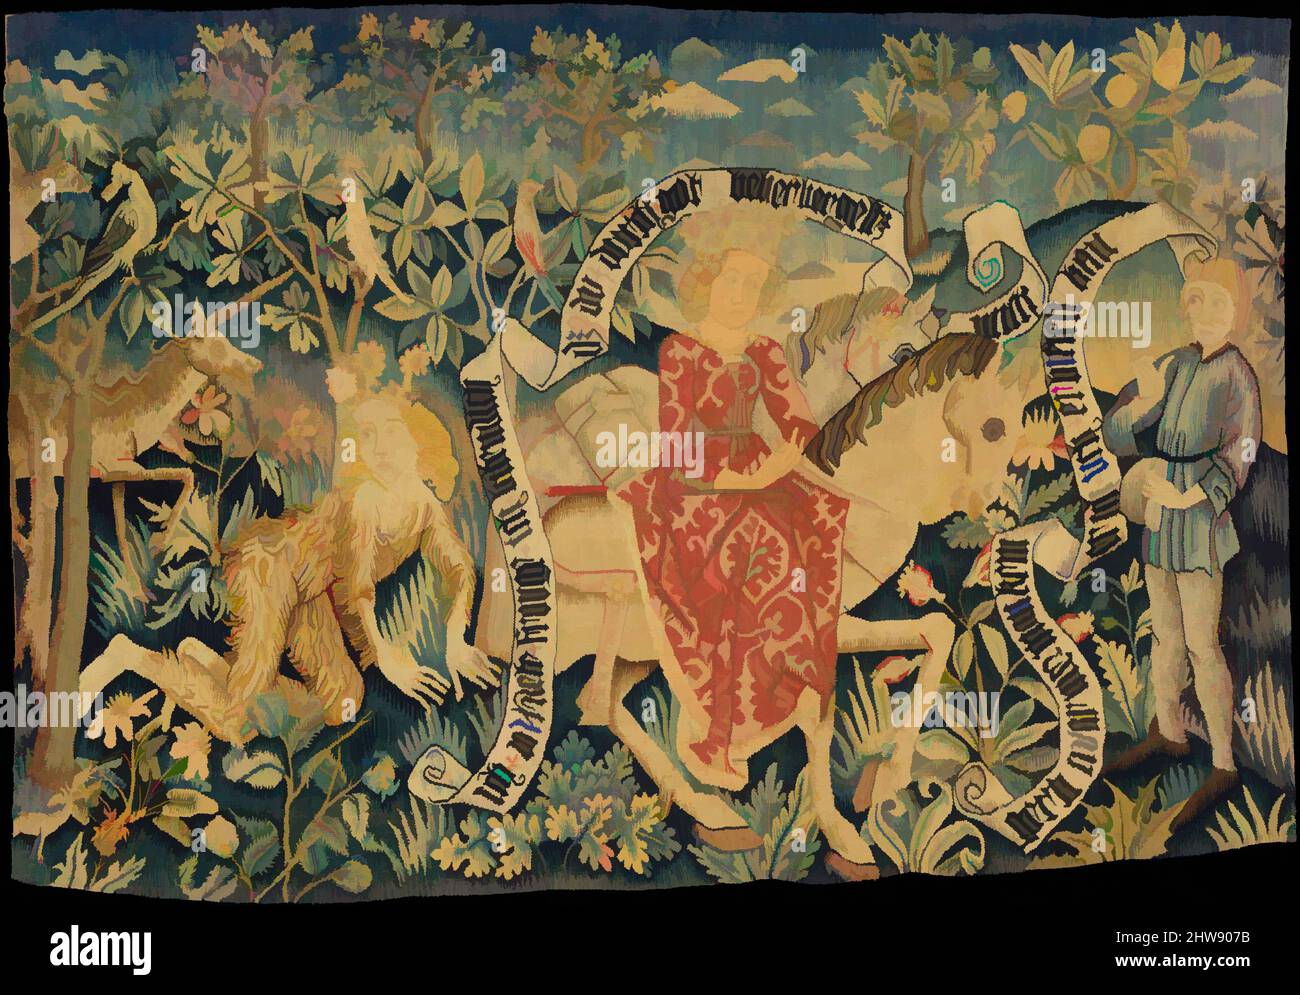 Arte ispirata a due scene del 'Der Busant' (il Buzzard), 1480–90, made in Strasbourg, Alsazia, l'odierna Francia, Rhenish superiore, ordito di lino; lana, seta, lino, cotone e trame metalliche, 31 1/8 x 44 1/2 pollici (79 x 113 cm), tessili-arazzi, Rücklaken erano destinati ad essere appesi, opere classiche modernizzate da Artotop con un tuffo di modernità. Forme, colore e valore, impatto visivo accattivante sulle emozioni artistiche attraverso la libertà delle opere d'arte in modo contemporaneo. Un messaggio senza tempo che persegue una nuova direzione selvaggiamente creativa. Artisti che si rivolgono al supporto digitale e creano l'NFT Artotop Foto Stock